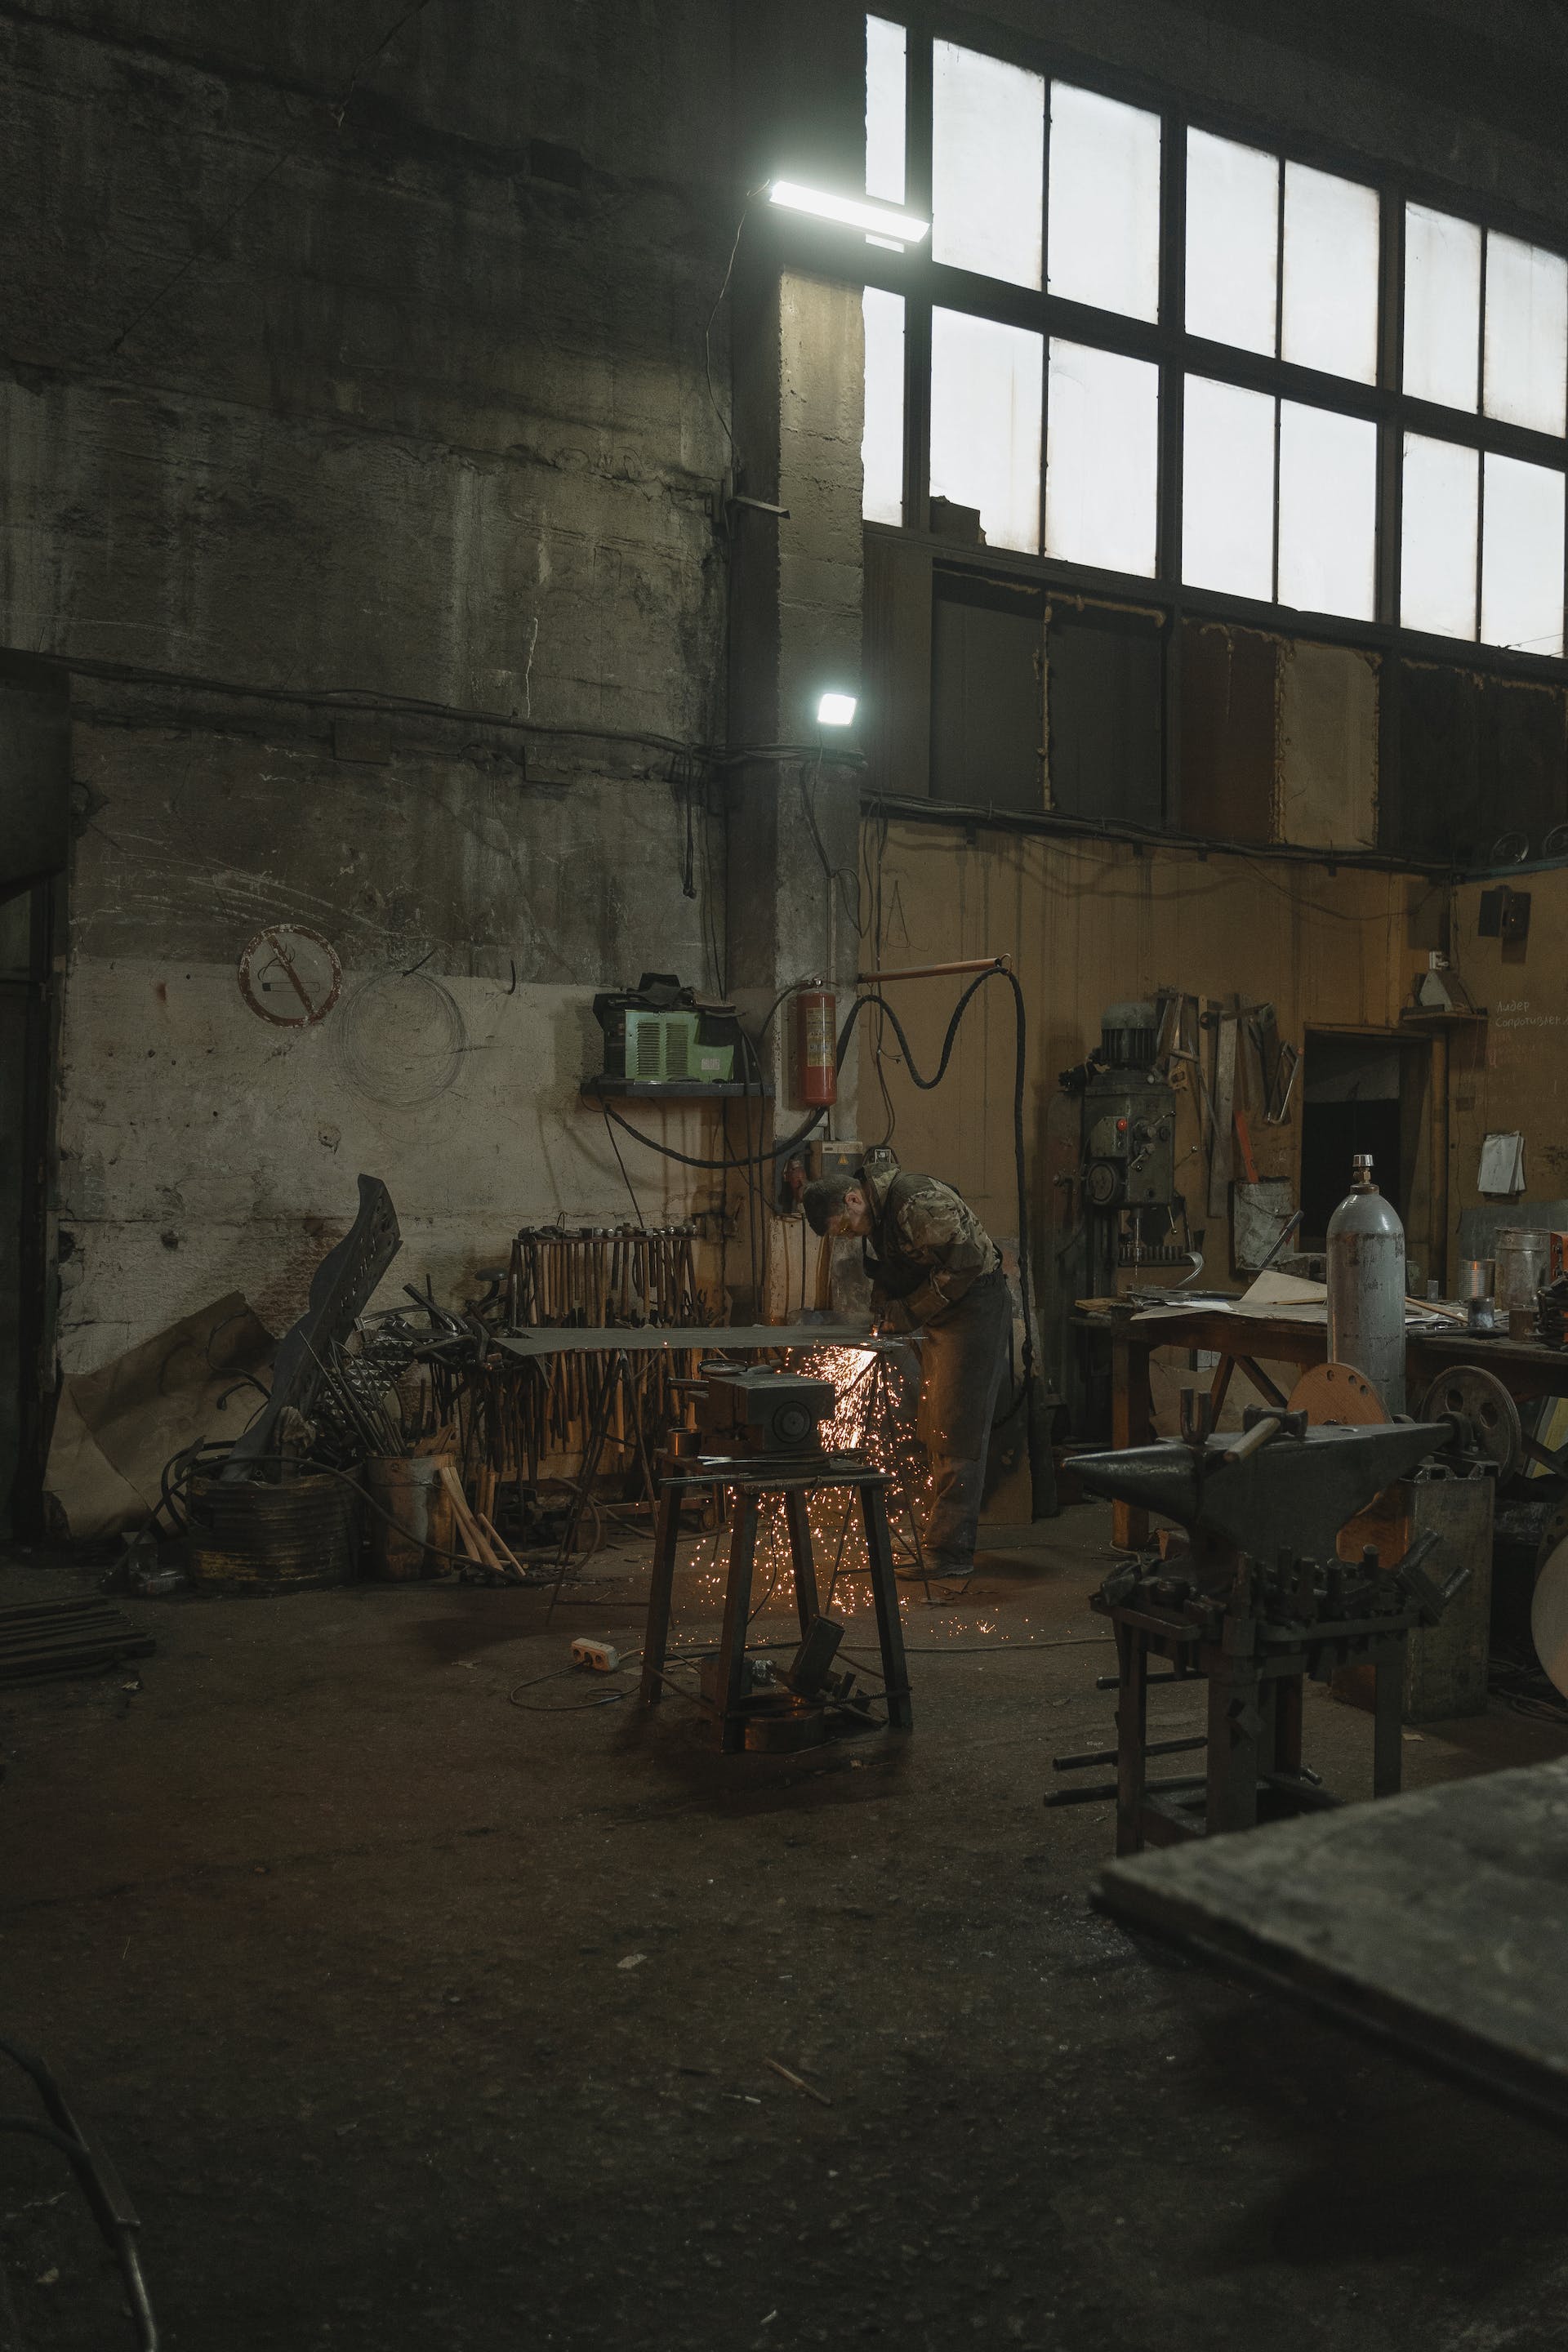 Una persona soldando metal en un taller | Fuente: Pexels